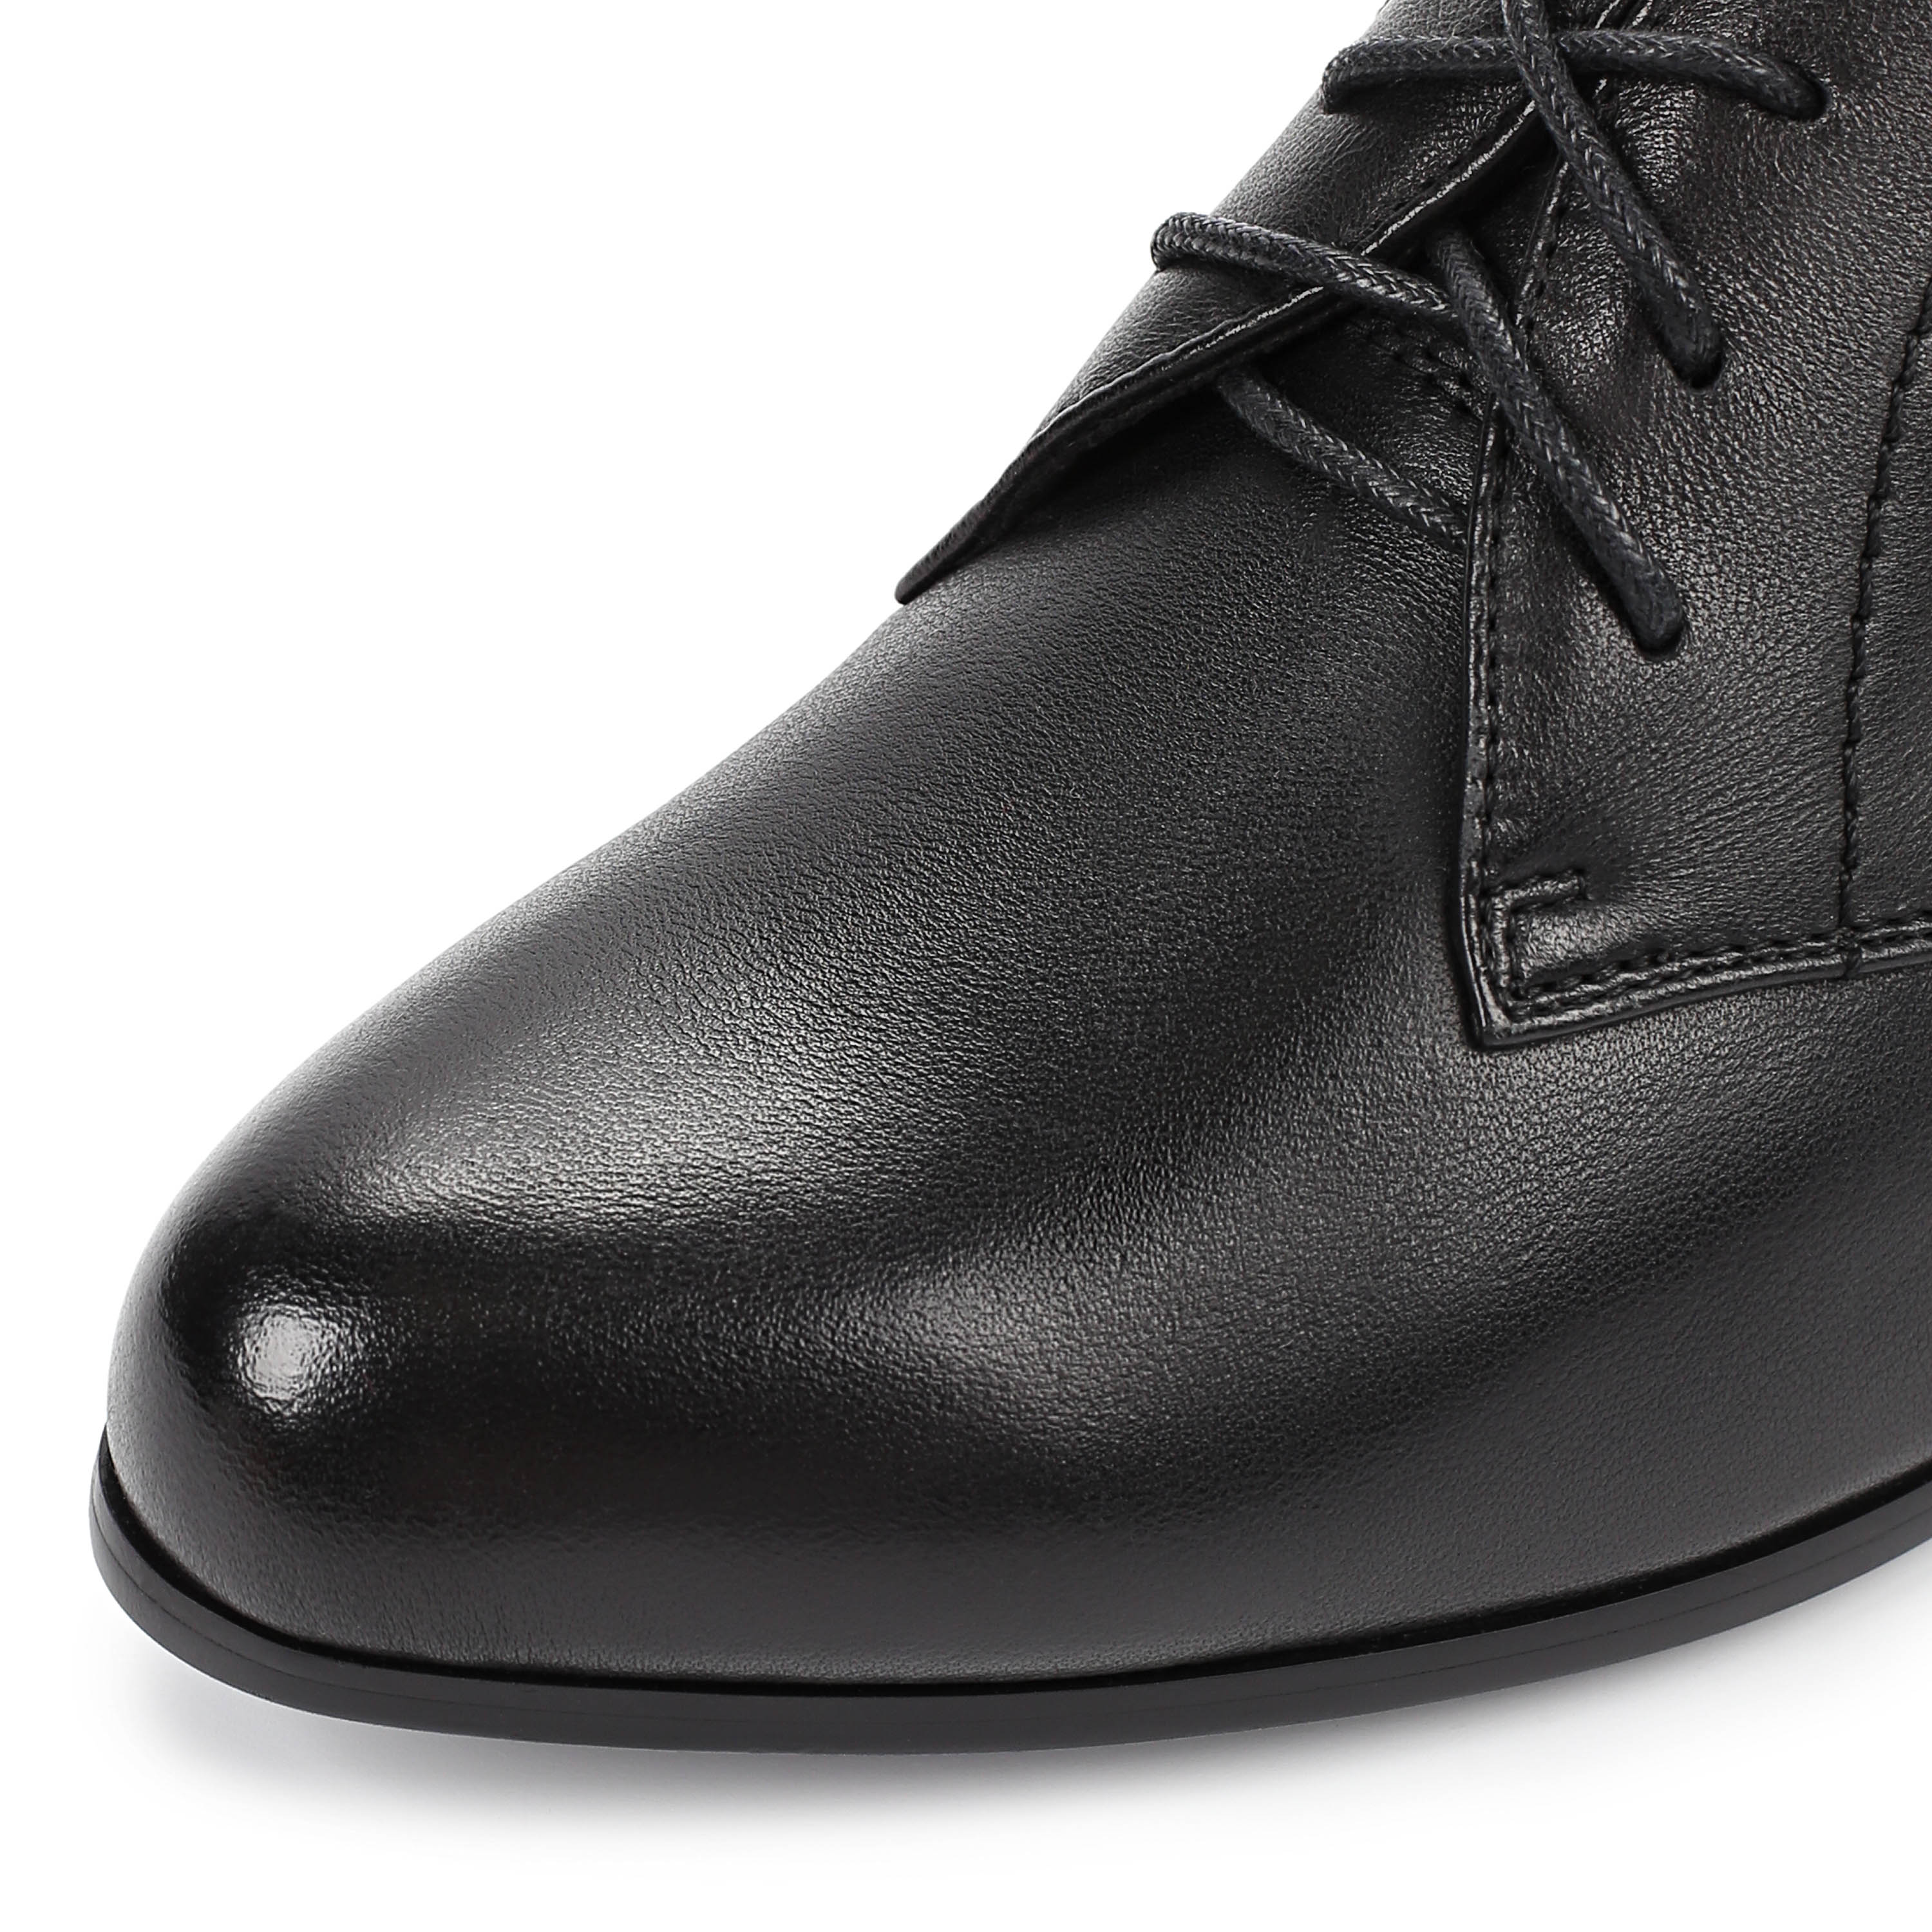 Туфли Thomas Munz 233-522A-2102 233-522A-2102, цвет черный, размер 36 туфли закрытые - фото 6